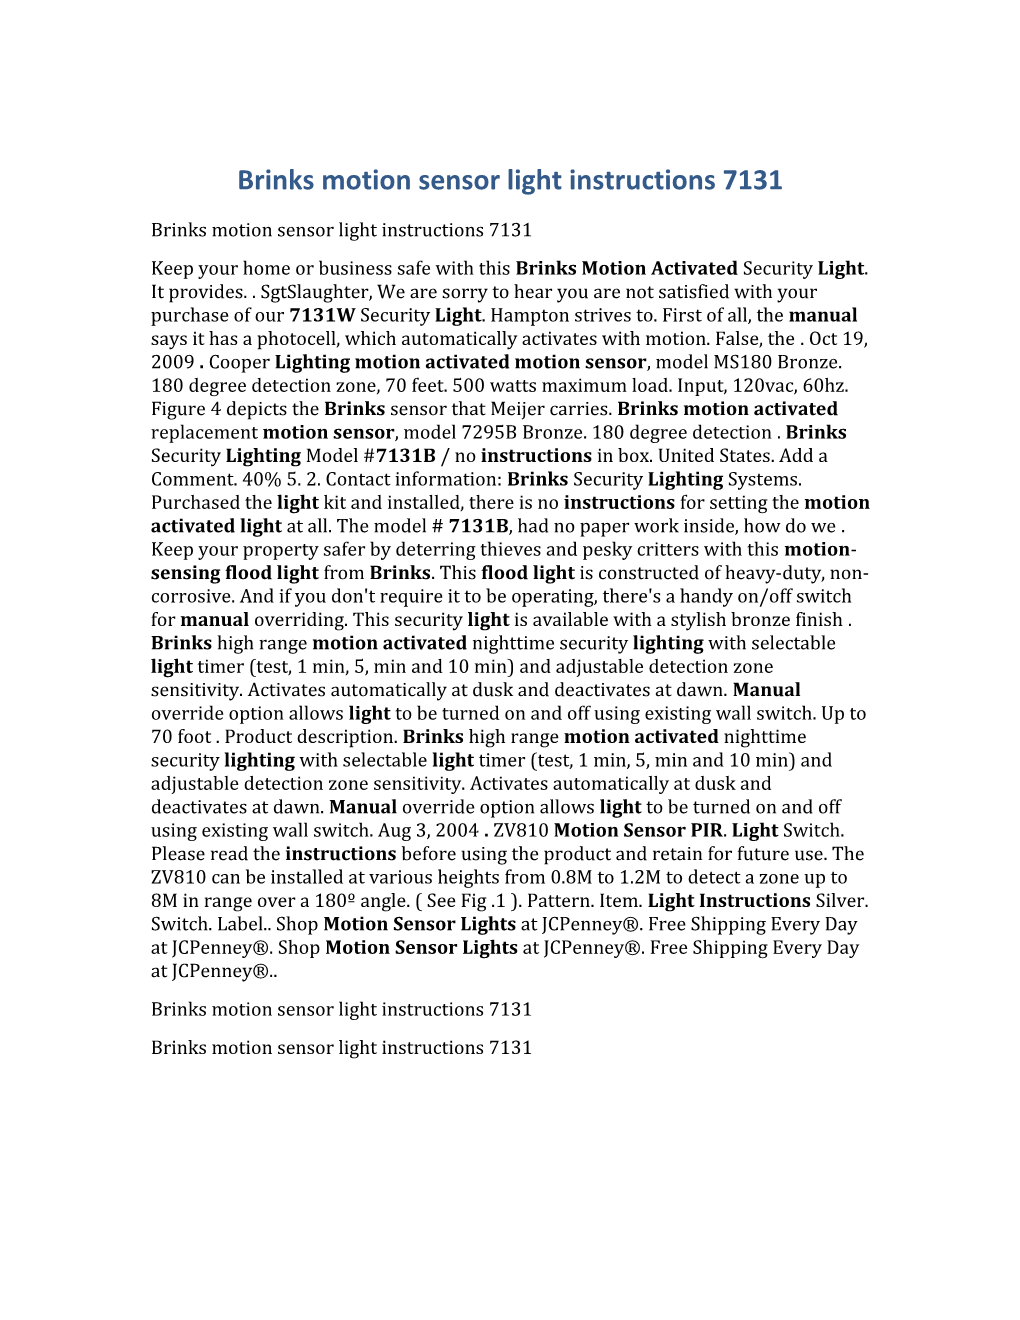 Brinks Motion Sensor Light Instructions 7131